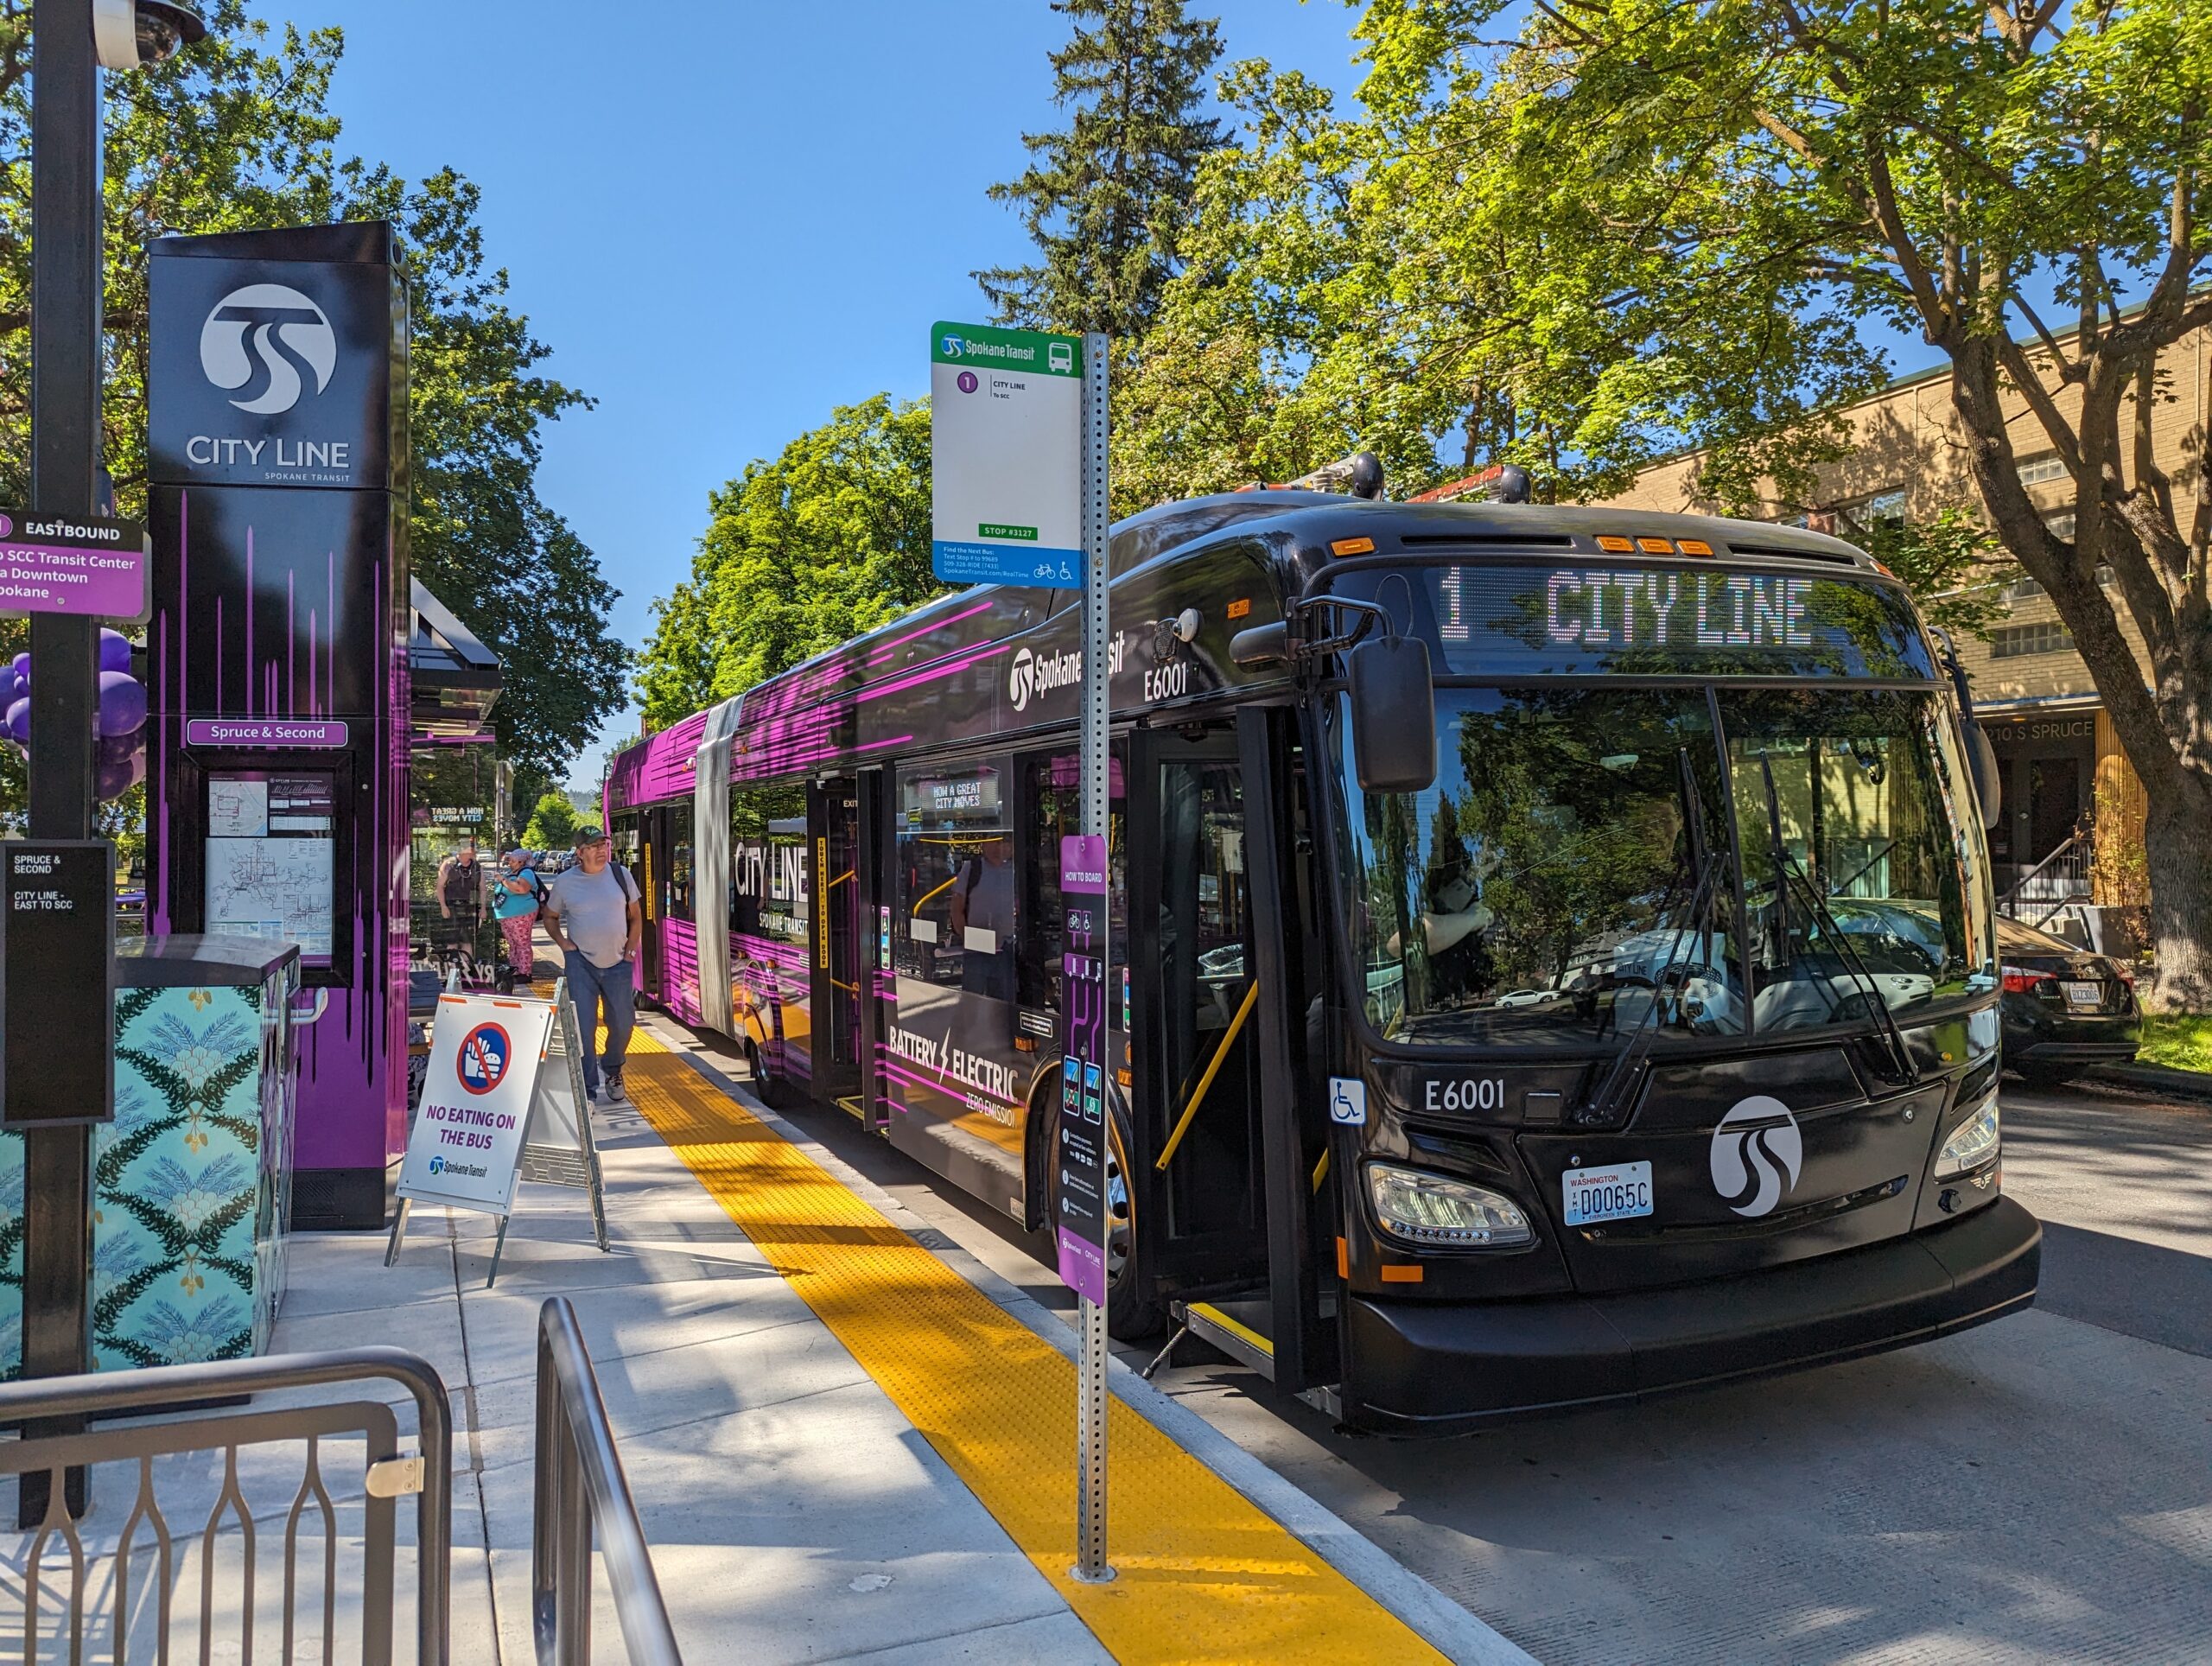 A City Line bus in Spokane